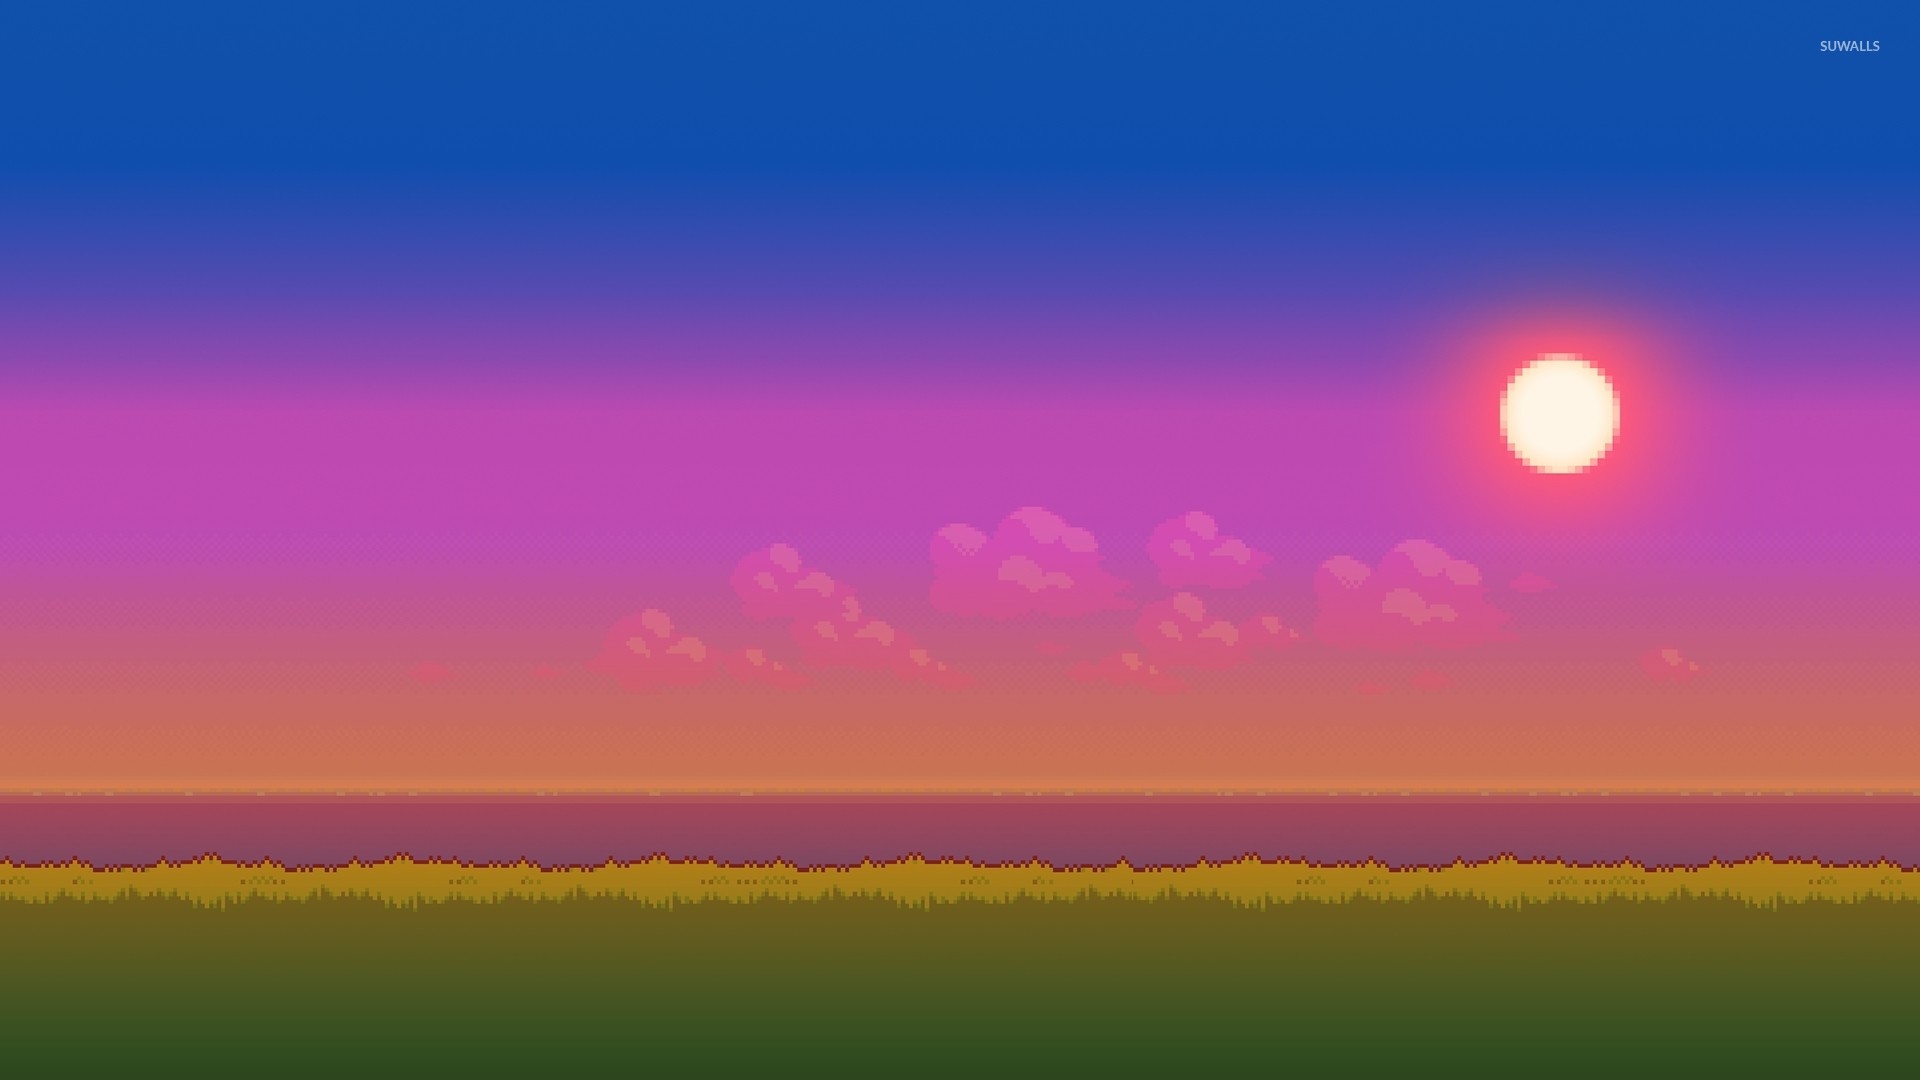 8 bit sunset wallpaper